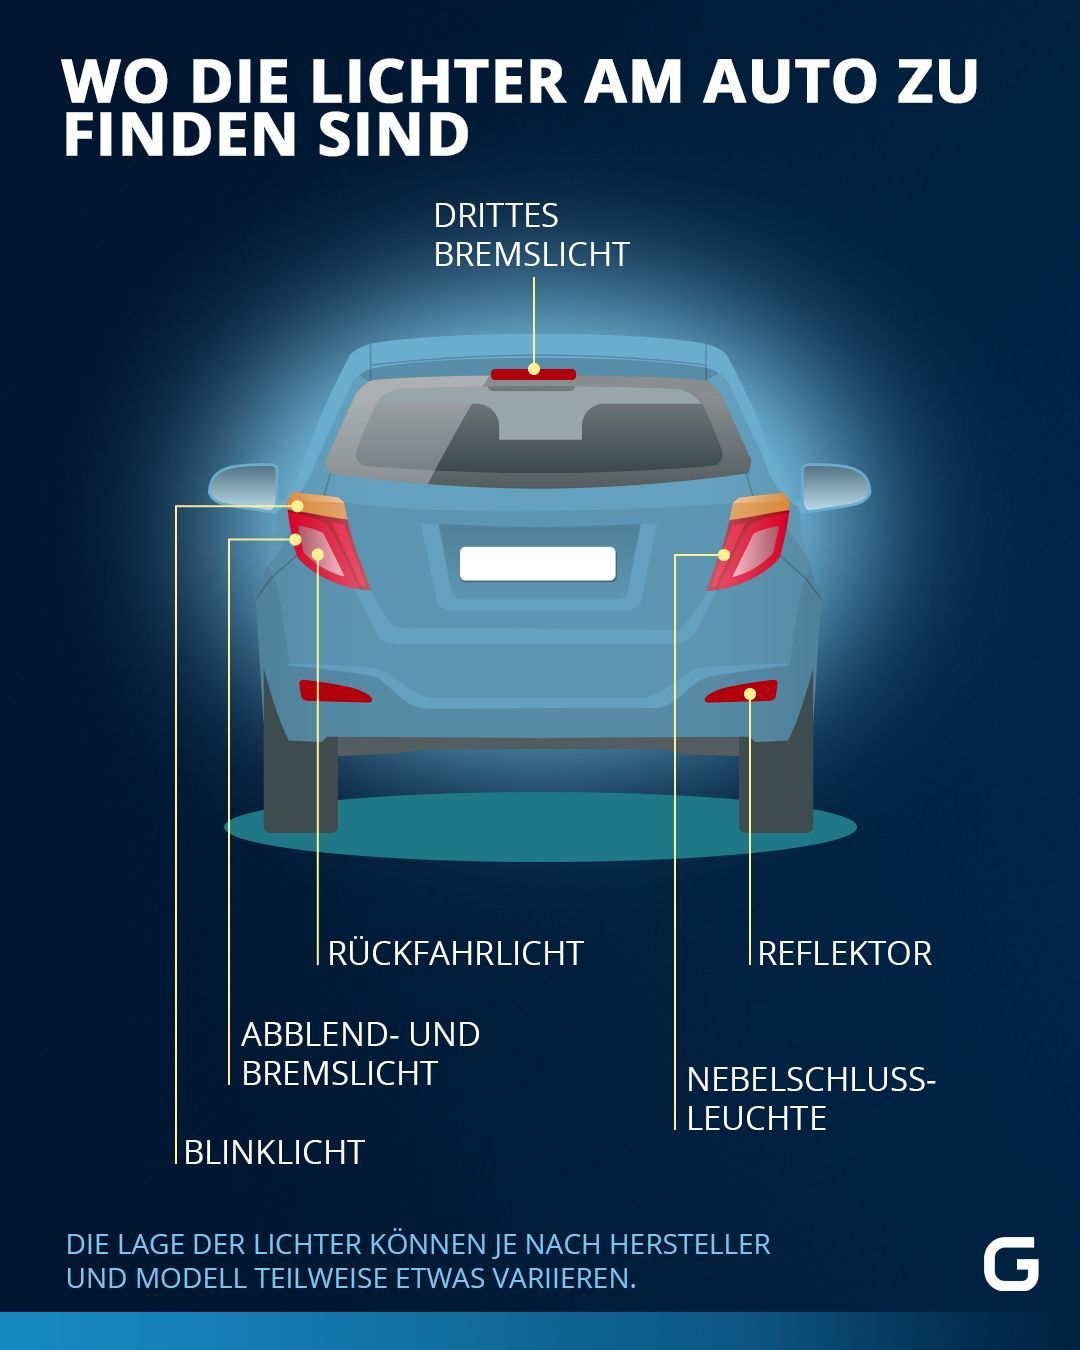 Auto-Lichter: Alles über Abblend-, Standlicht & Co